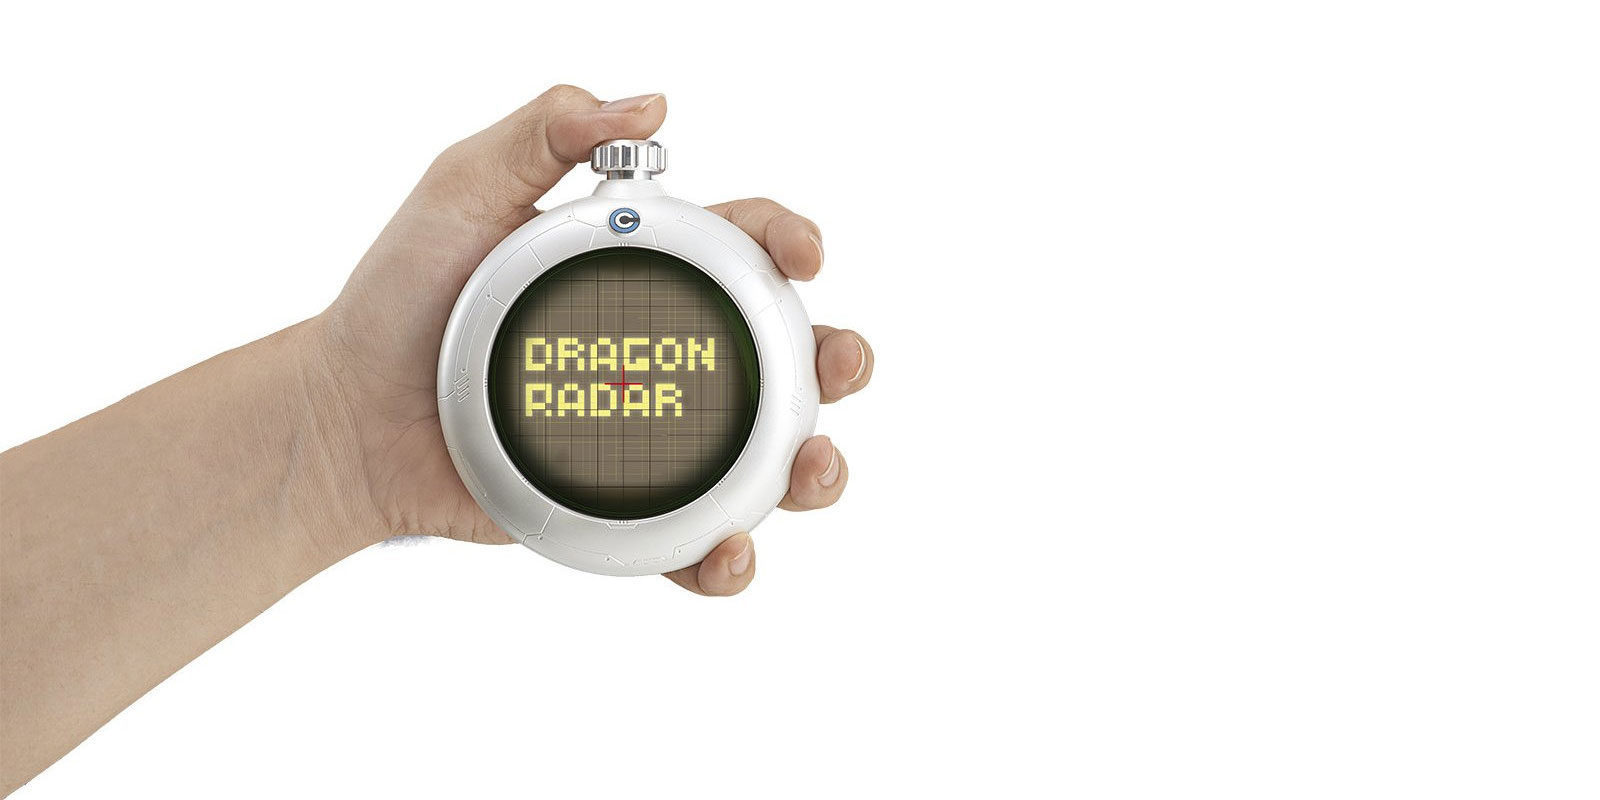 El radar de las bolas de 'Dragon Ball' se pone a la venta en Japón